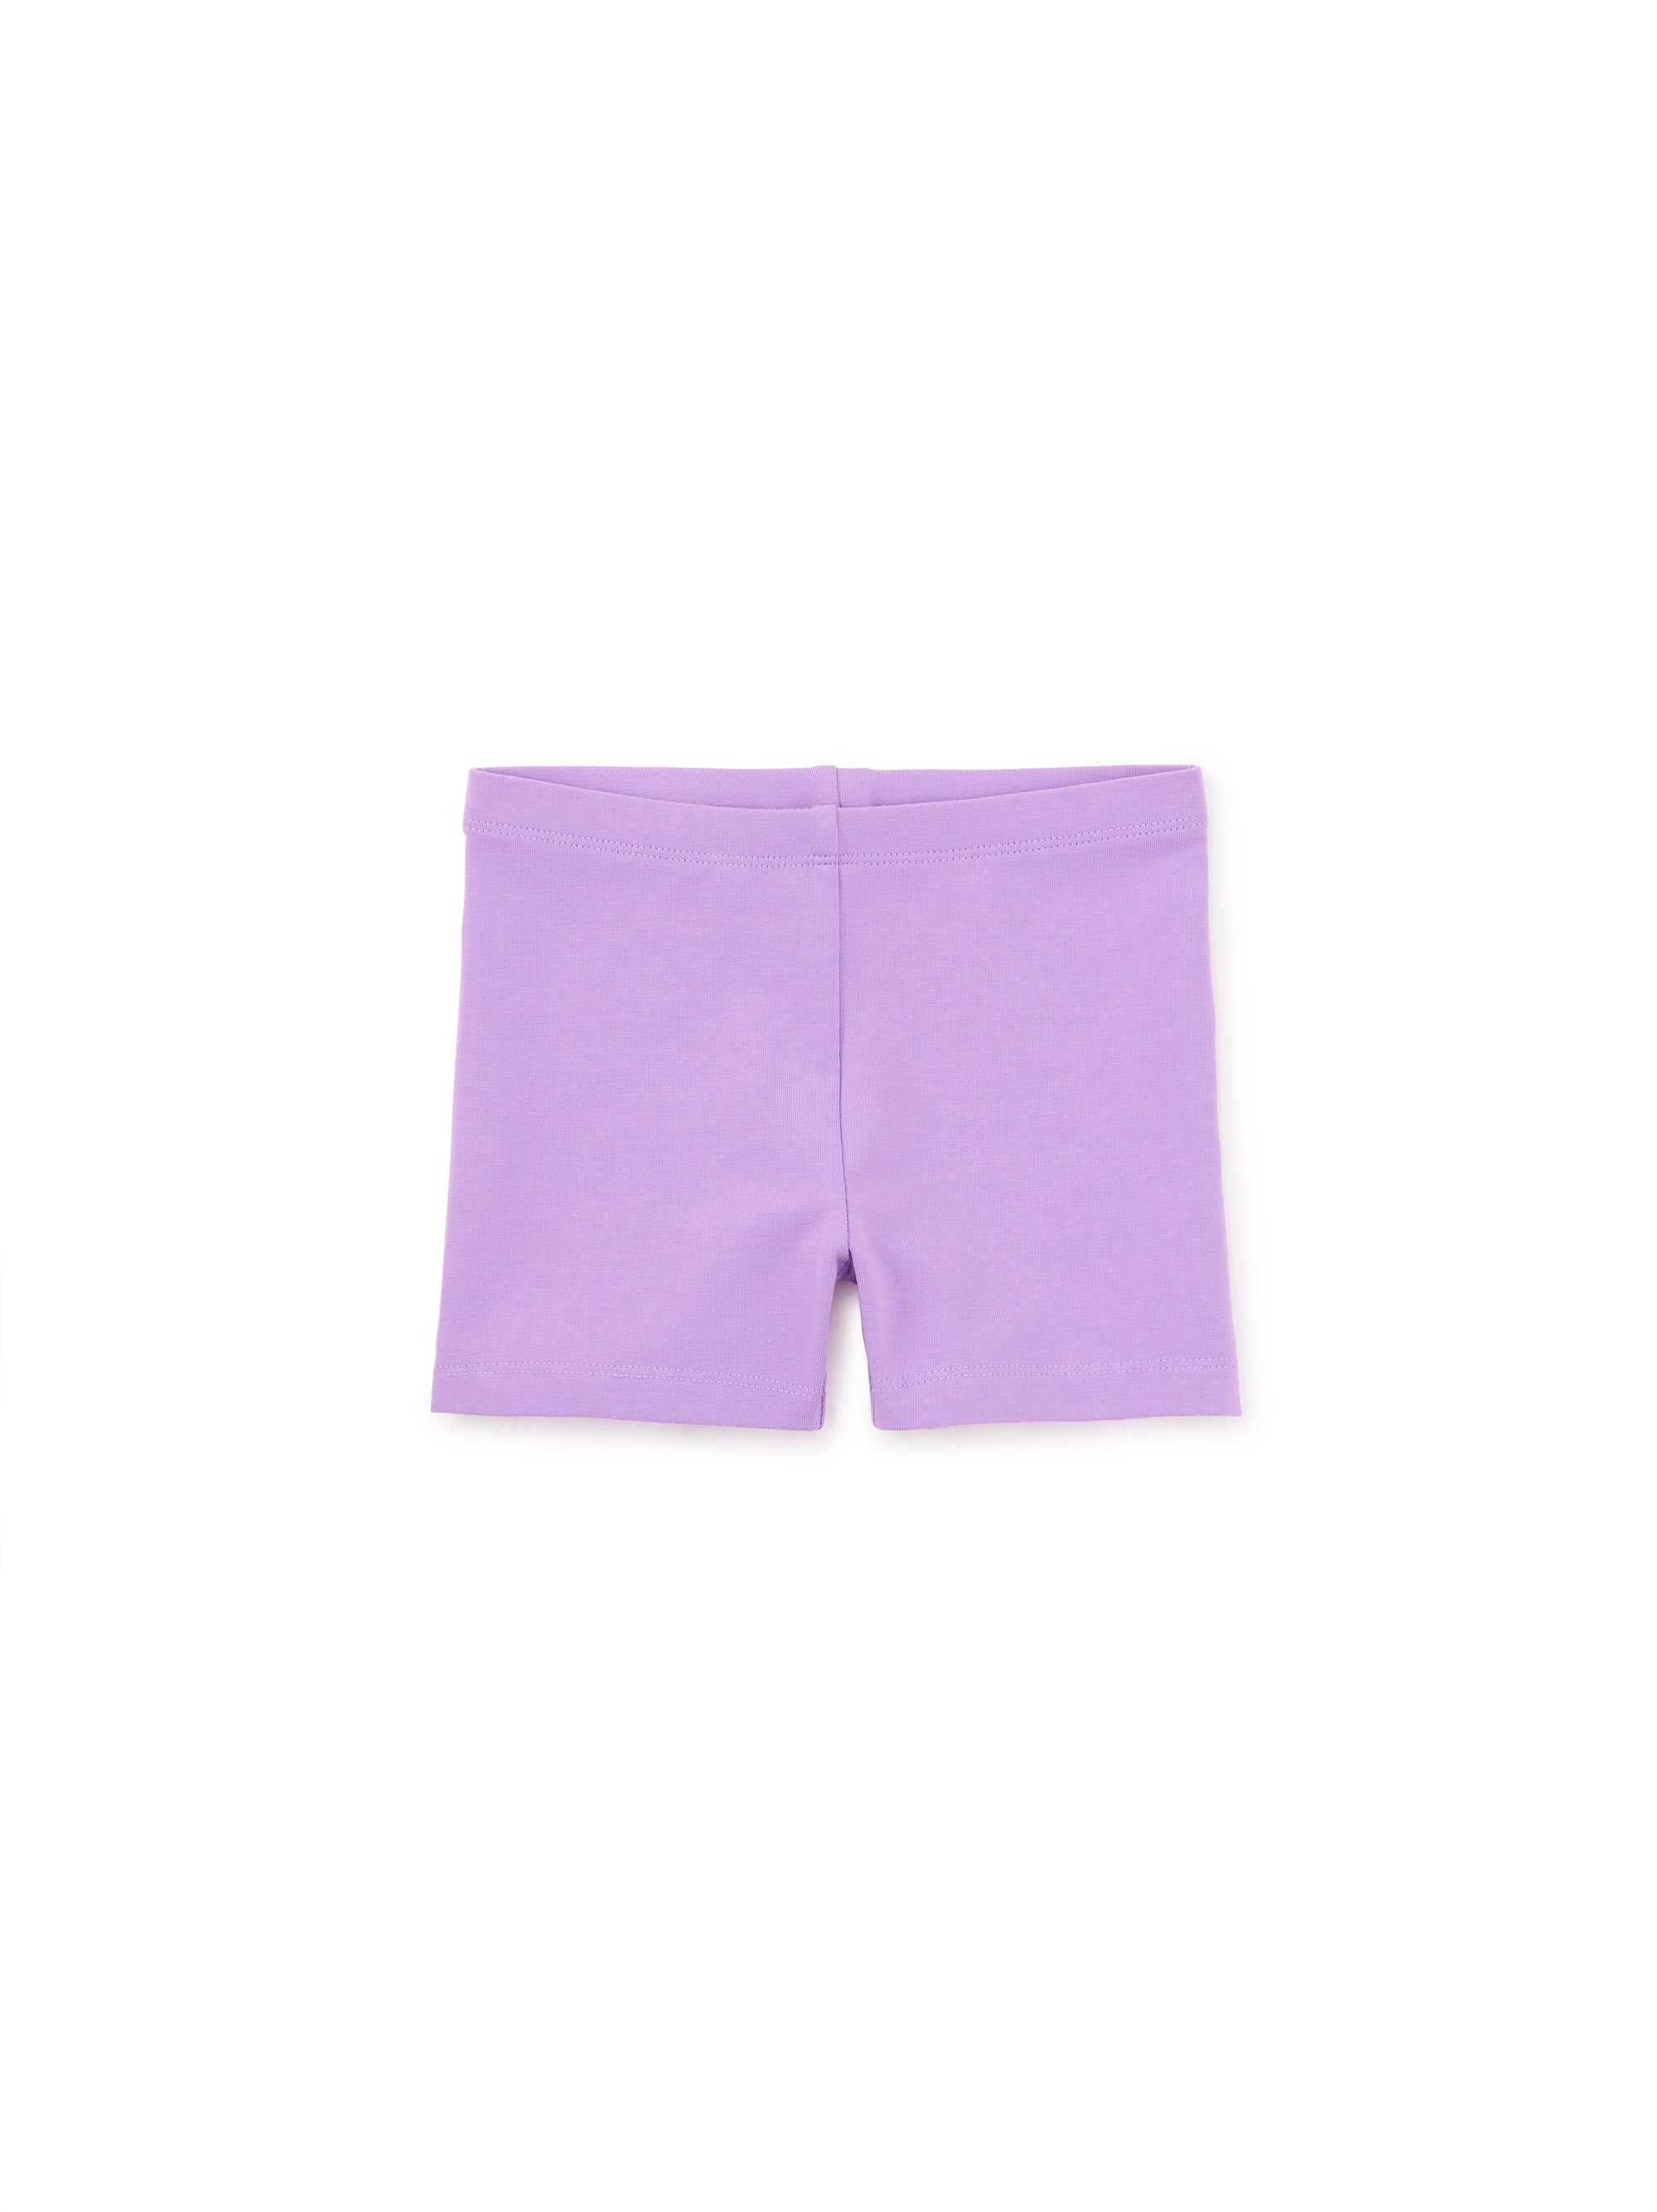 Somersault Shorts - African Violet